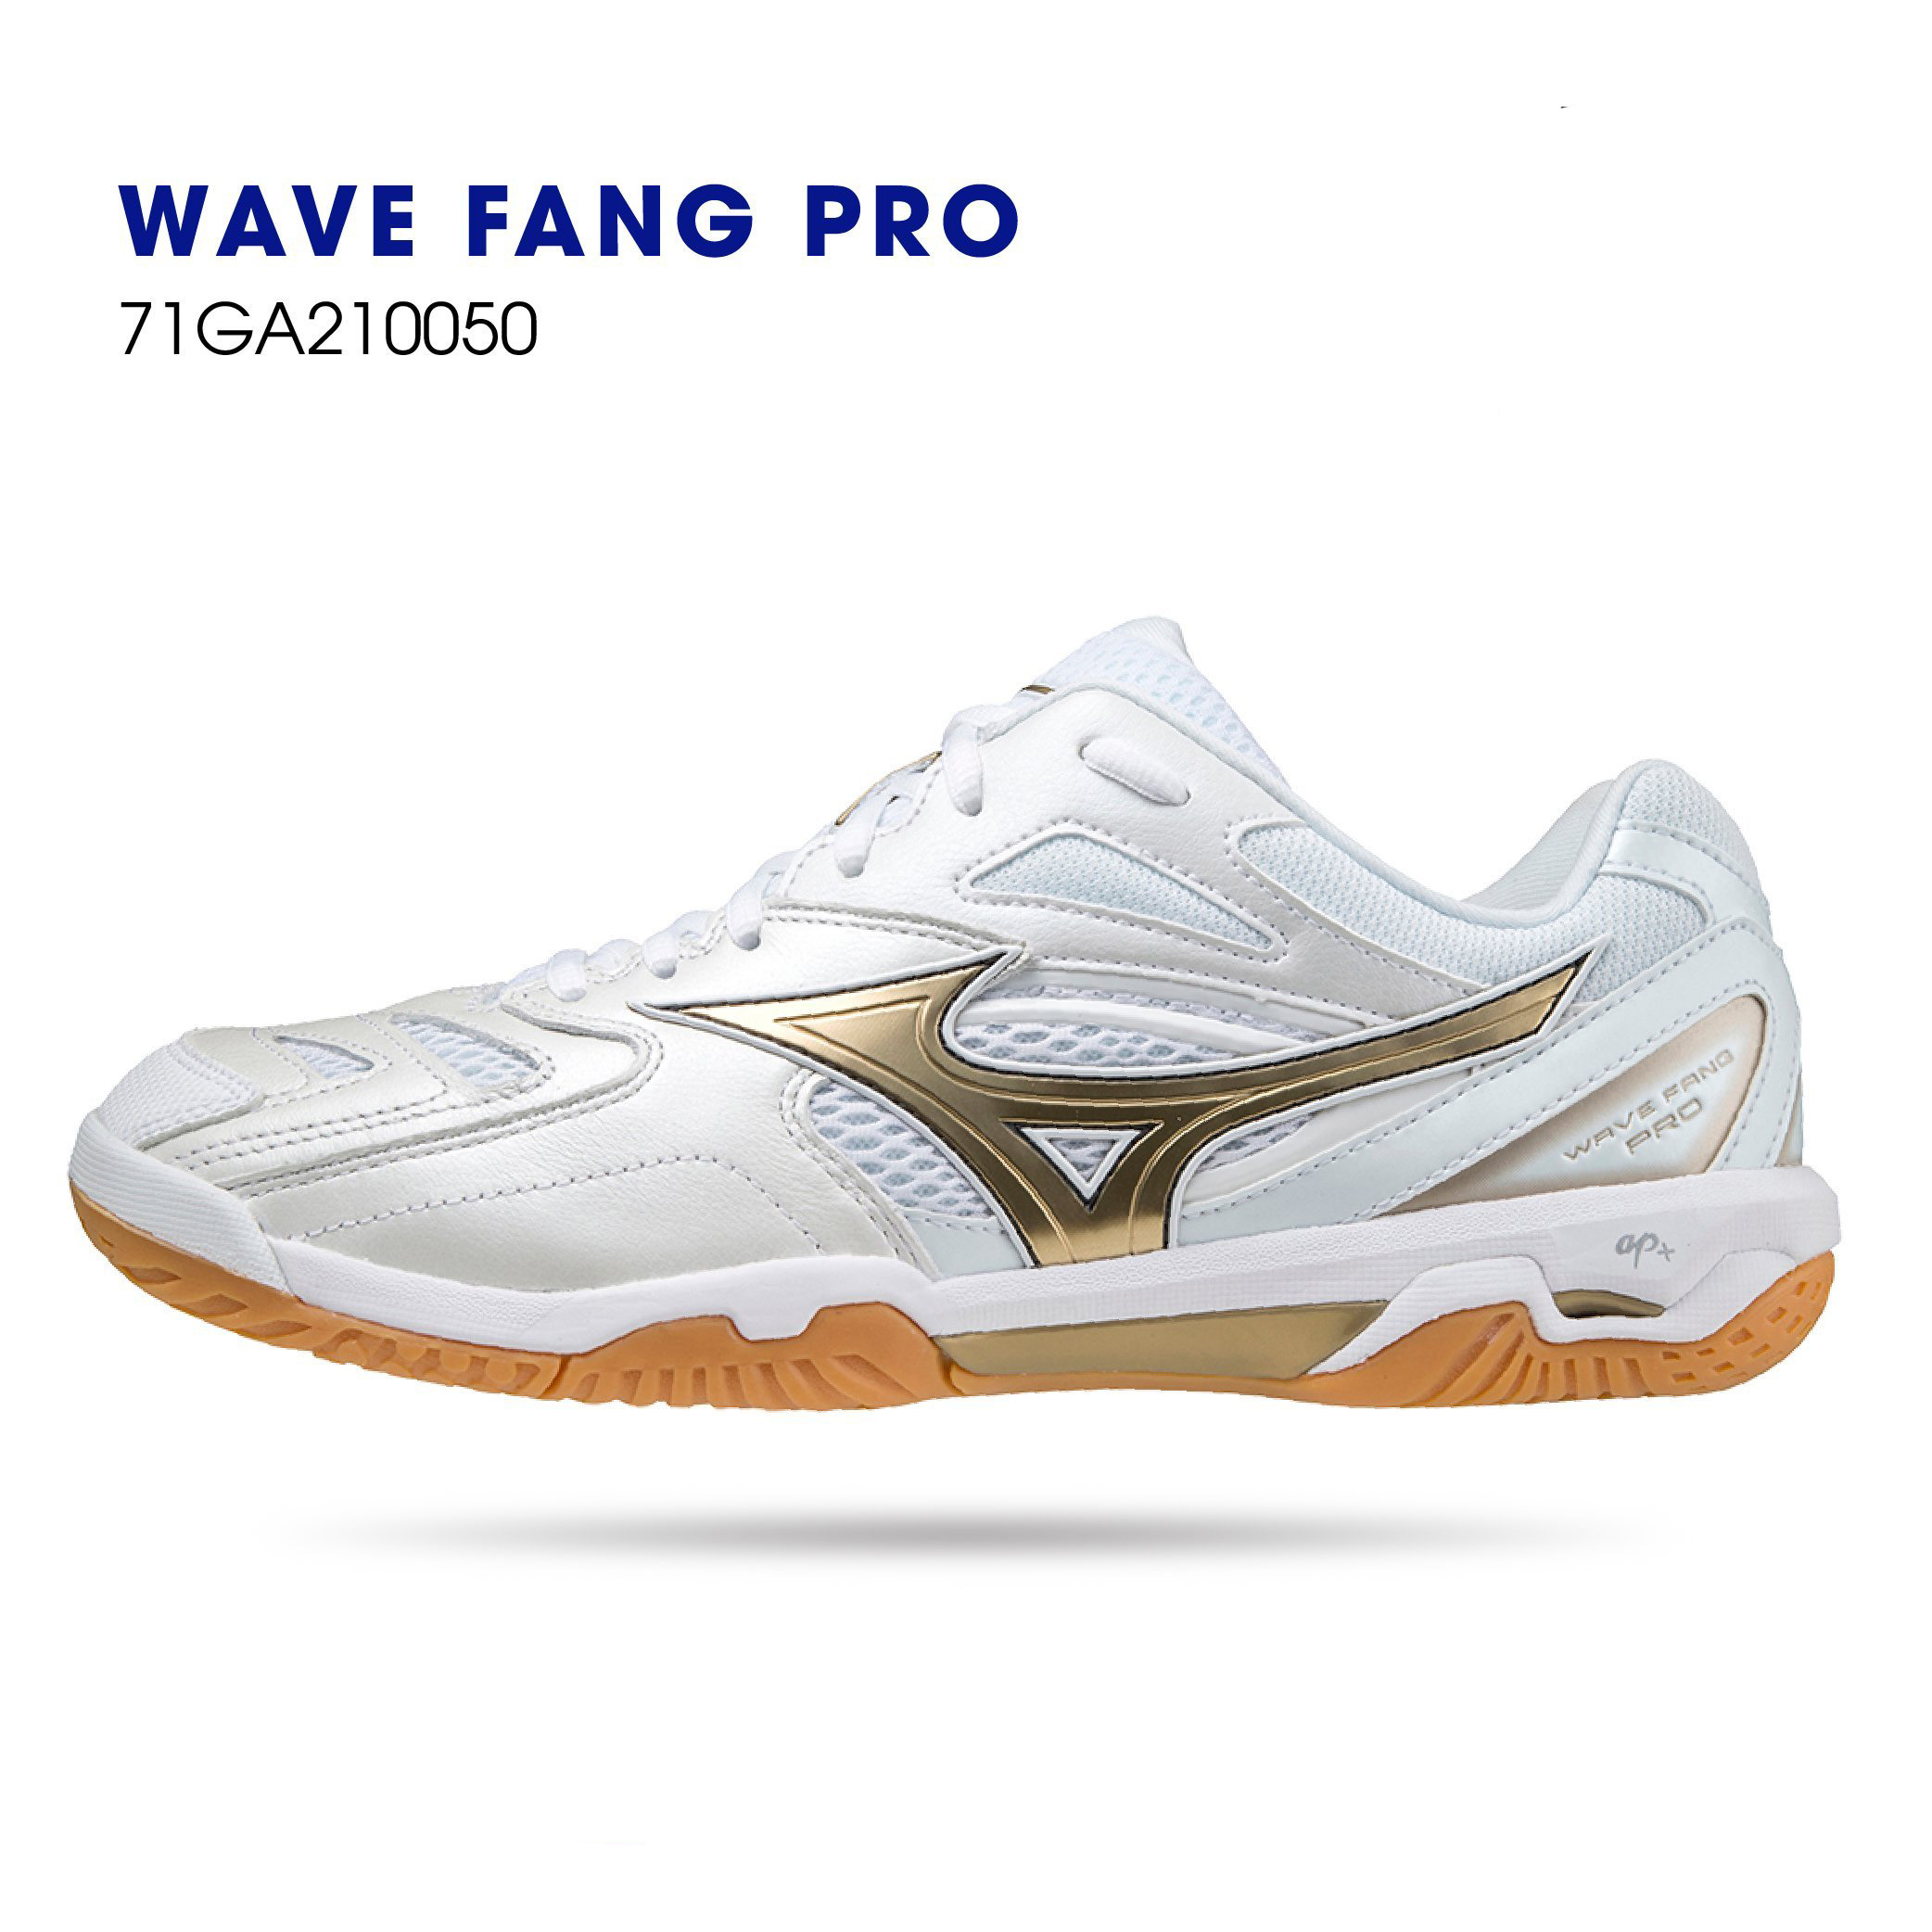 Giày cầu lông Mizuno Wave Fang Pro 71GA210050 mẫu mới màu trắng gold